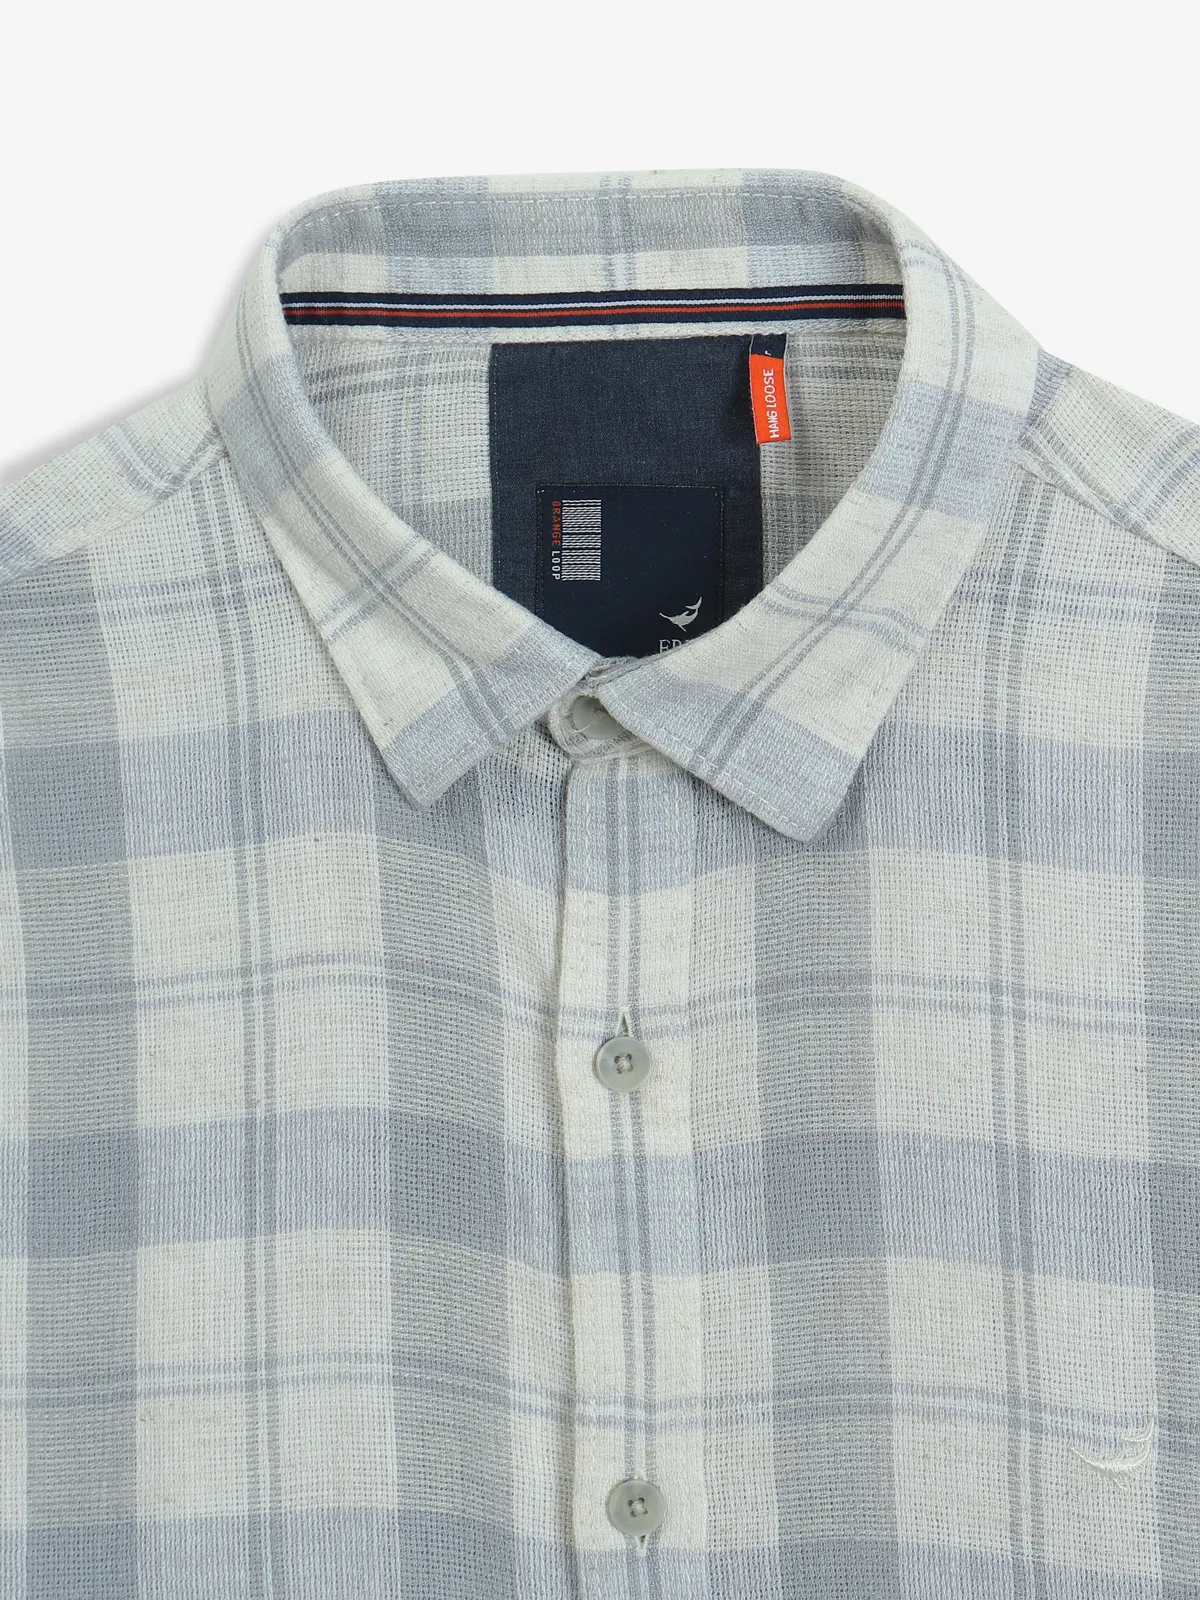 FRIO light blue checks cotton shirt